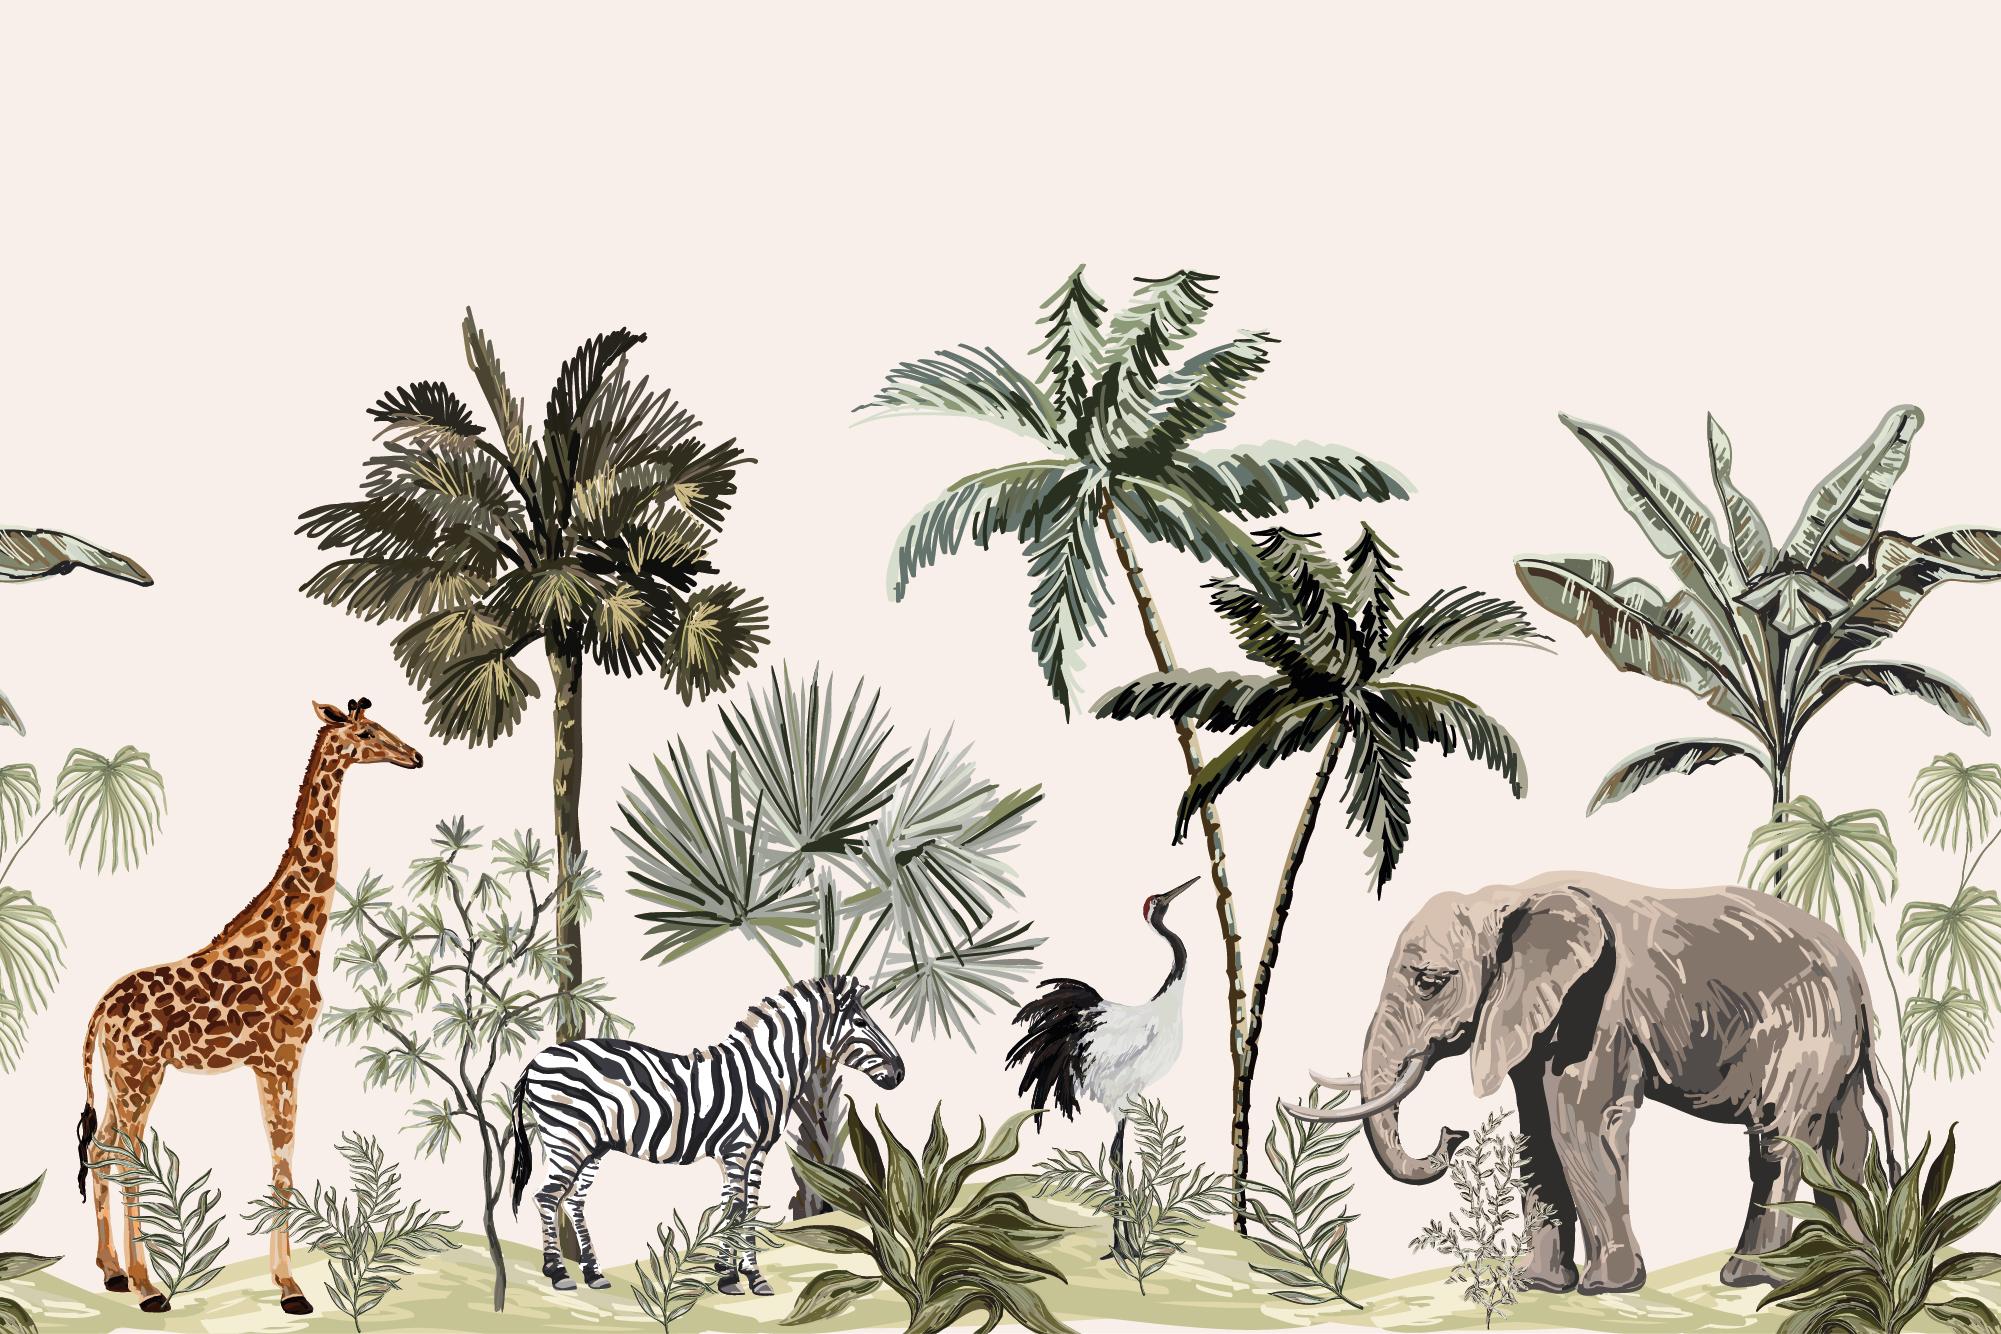 2001 x 1334 · jpeg - Jungle Animals Wallpaper mural - Jungle Wallpapers Wall Murals